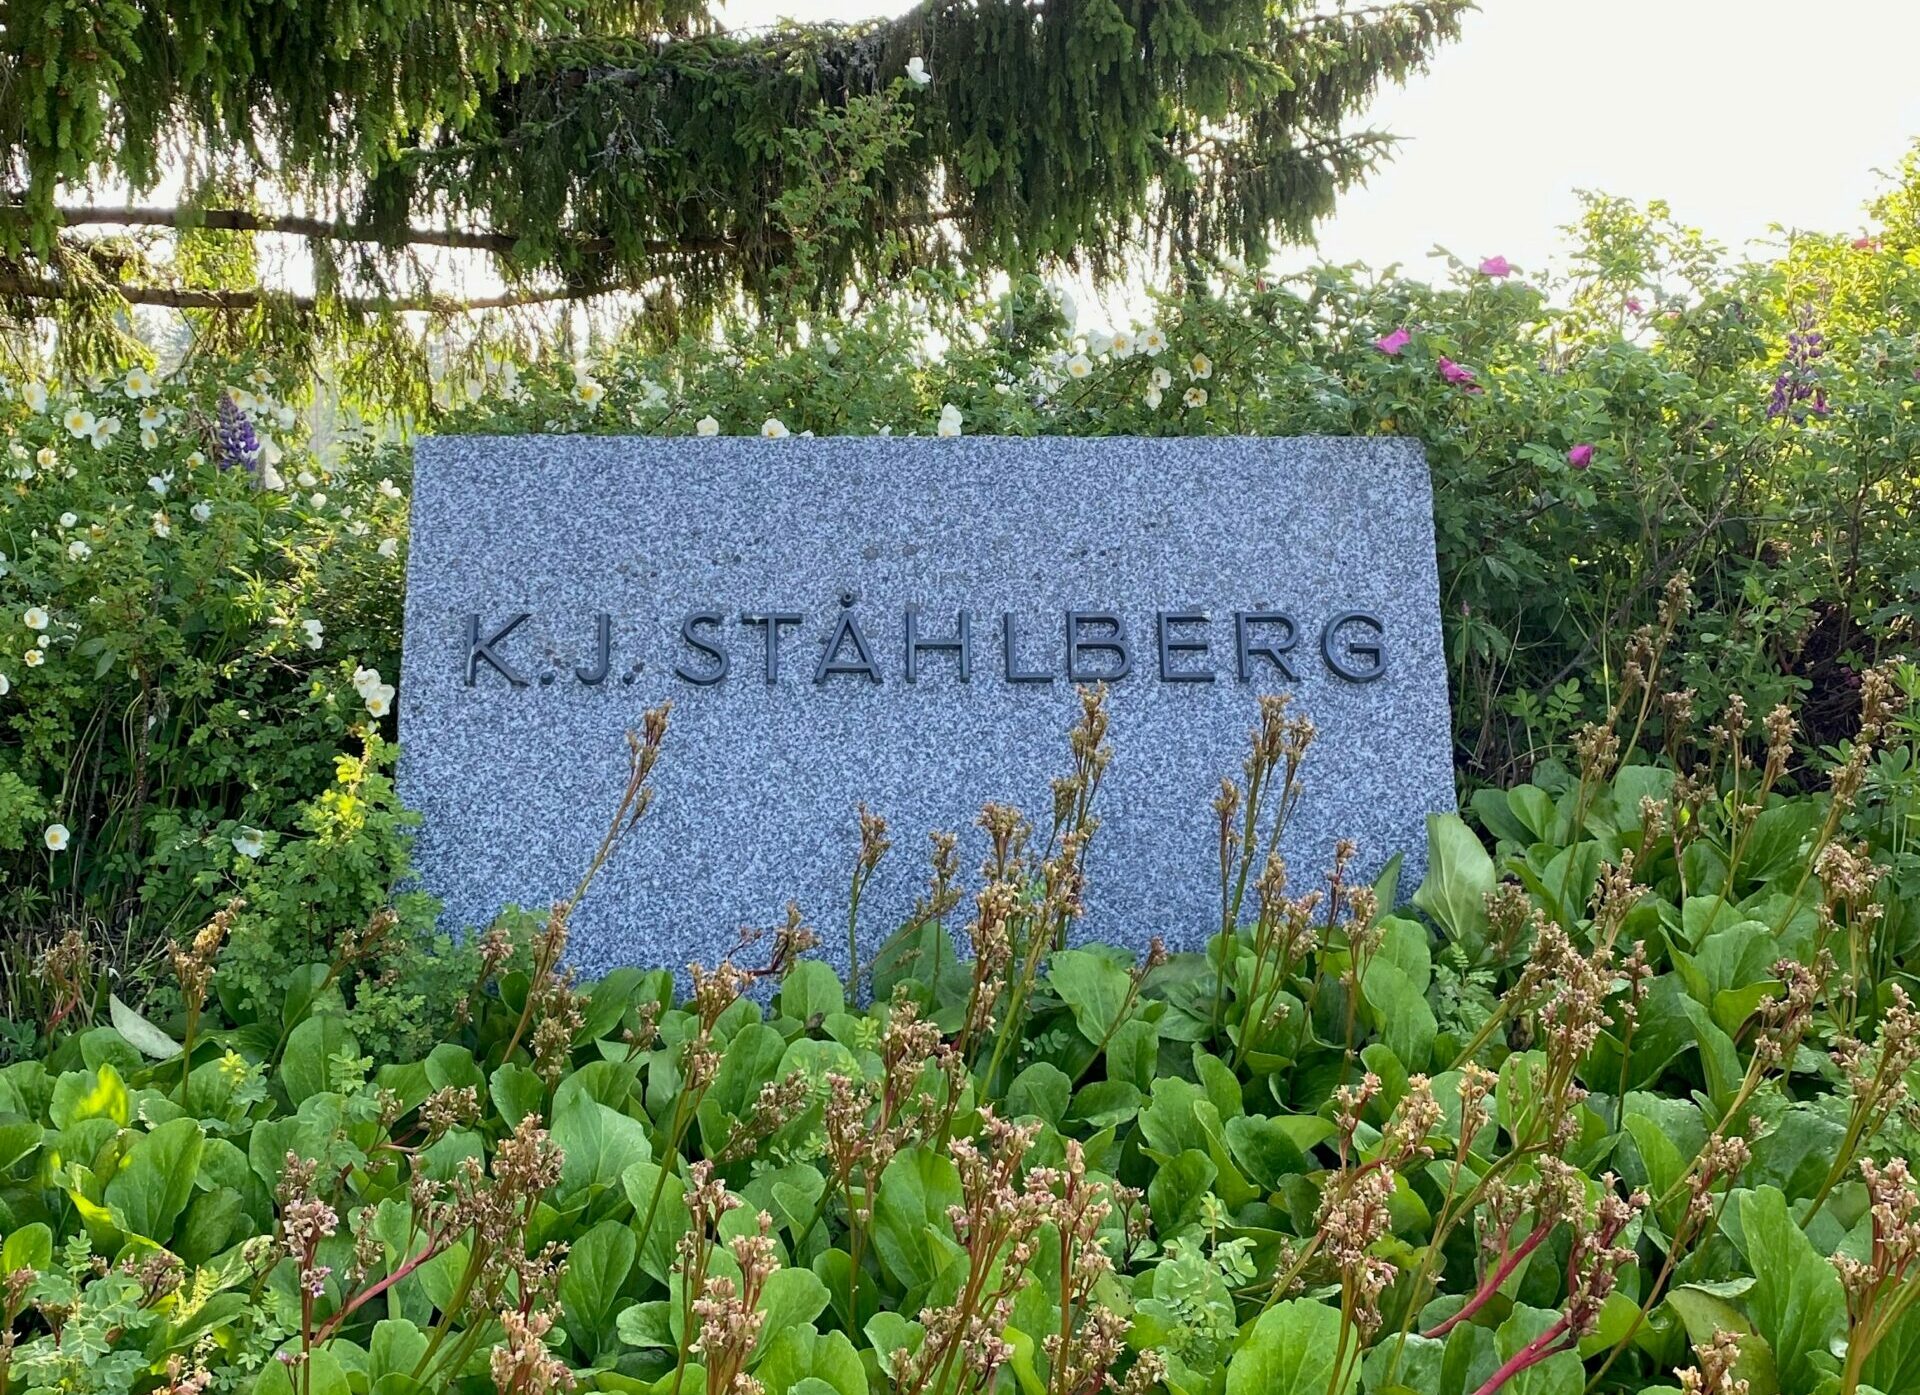 K. J. Ståhlbergin muistomerkki.